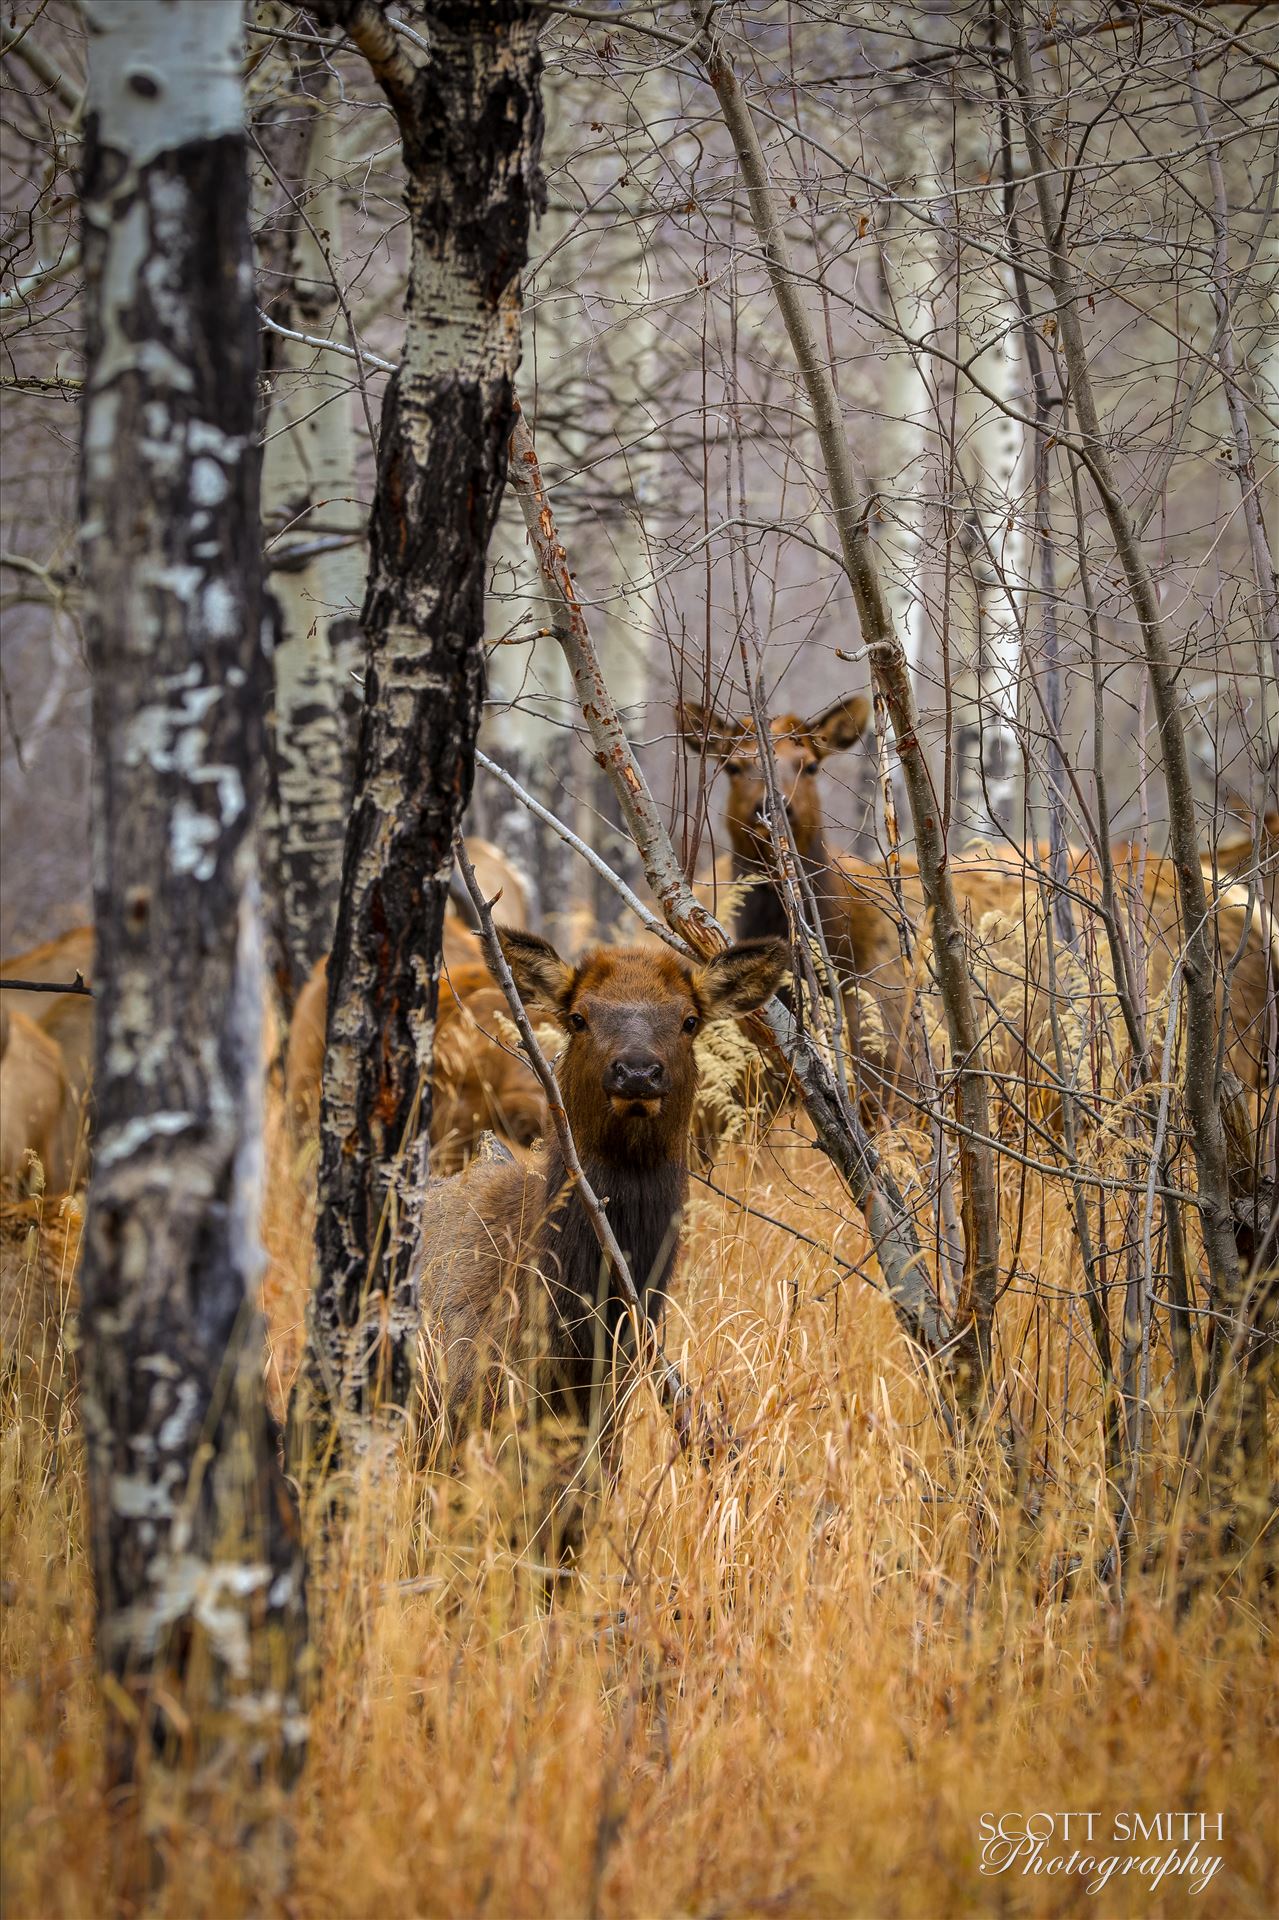 Sunday Elk No 02 - A heard of Elk near the entrance to Rocky Mountain National Park, Estes Park, Colorado. by Scott Smith Photos